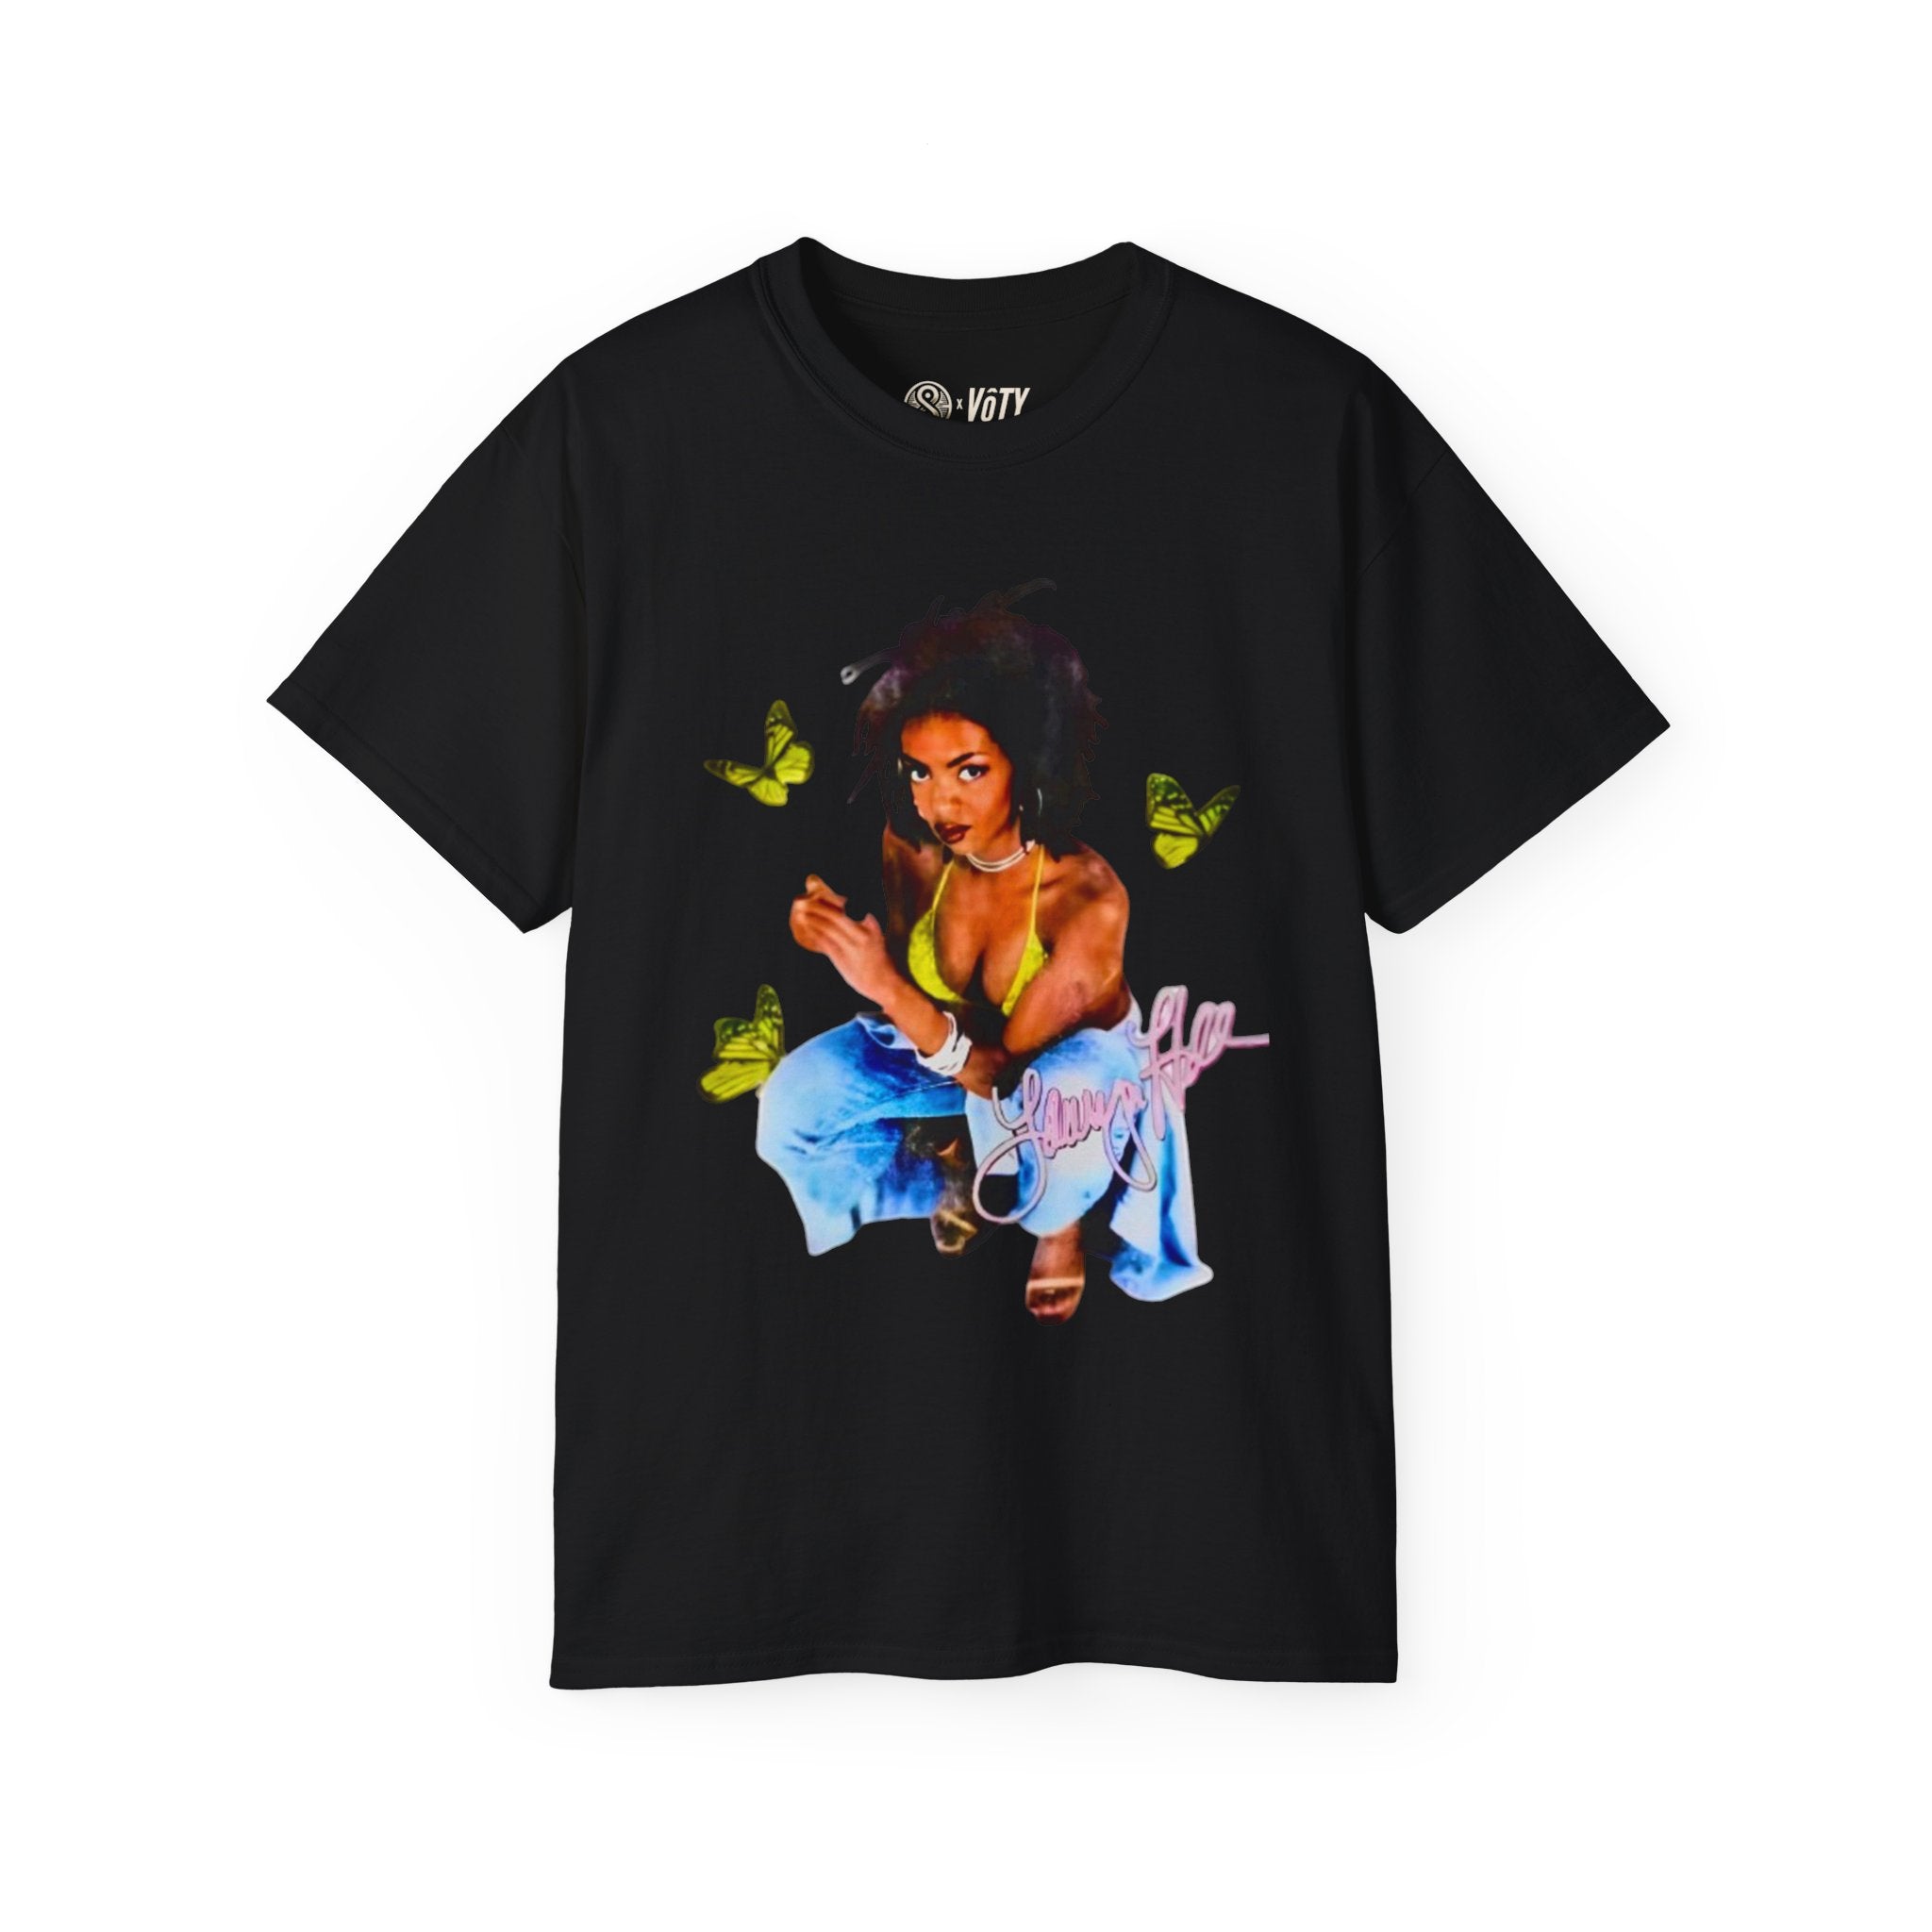 Lauryn Hill T-shirt